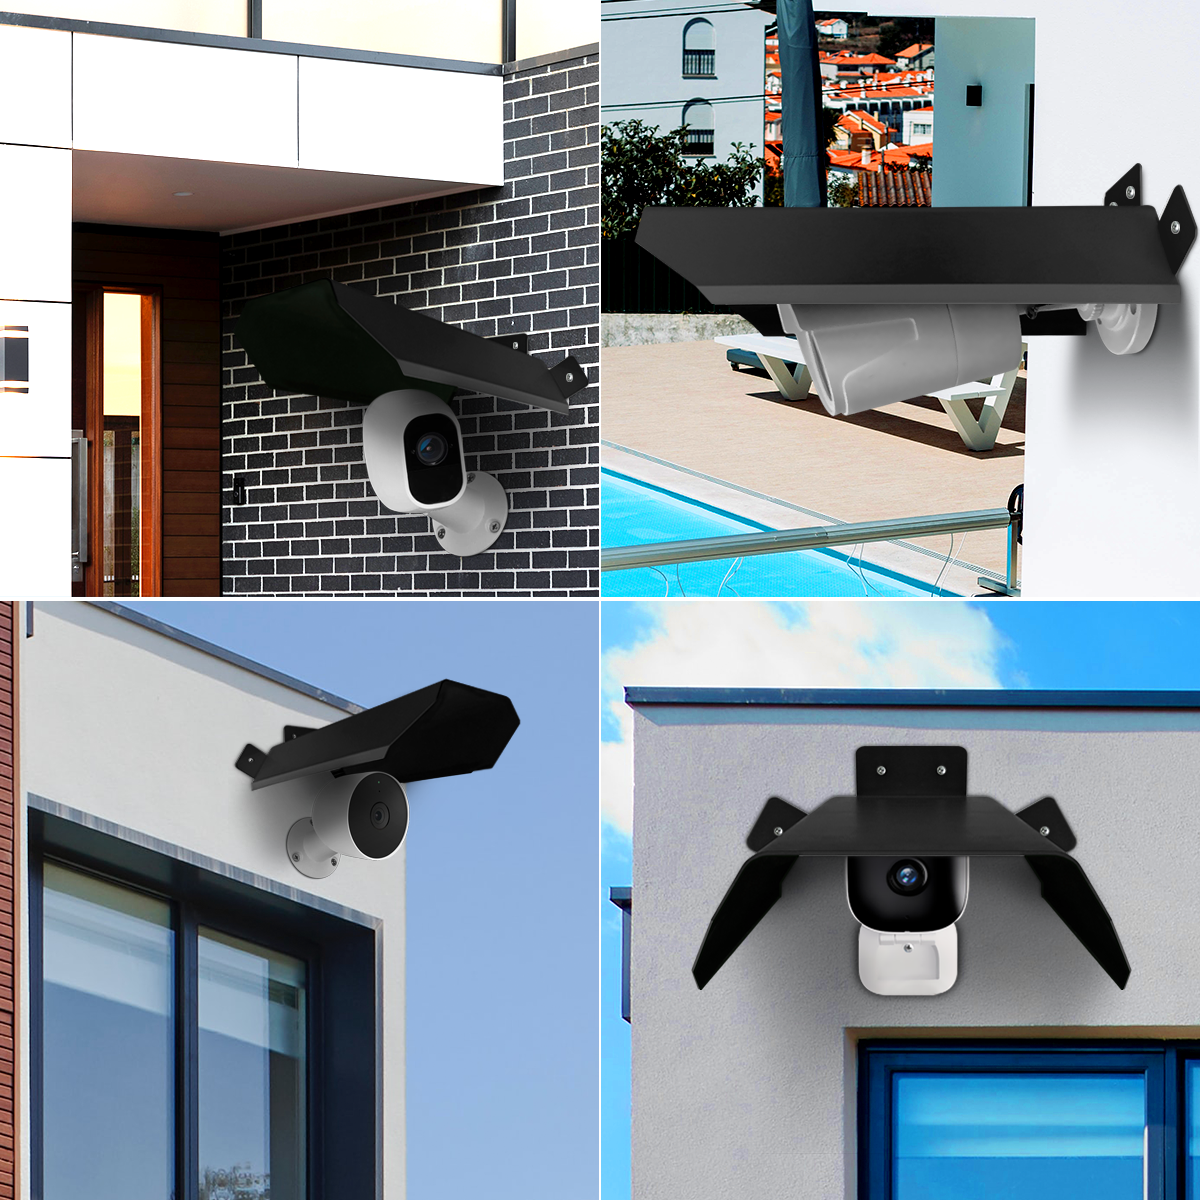 Camtrix Camera Outdoor Covers Weatherproof Security Protector Hood